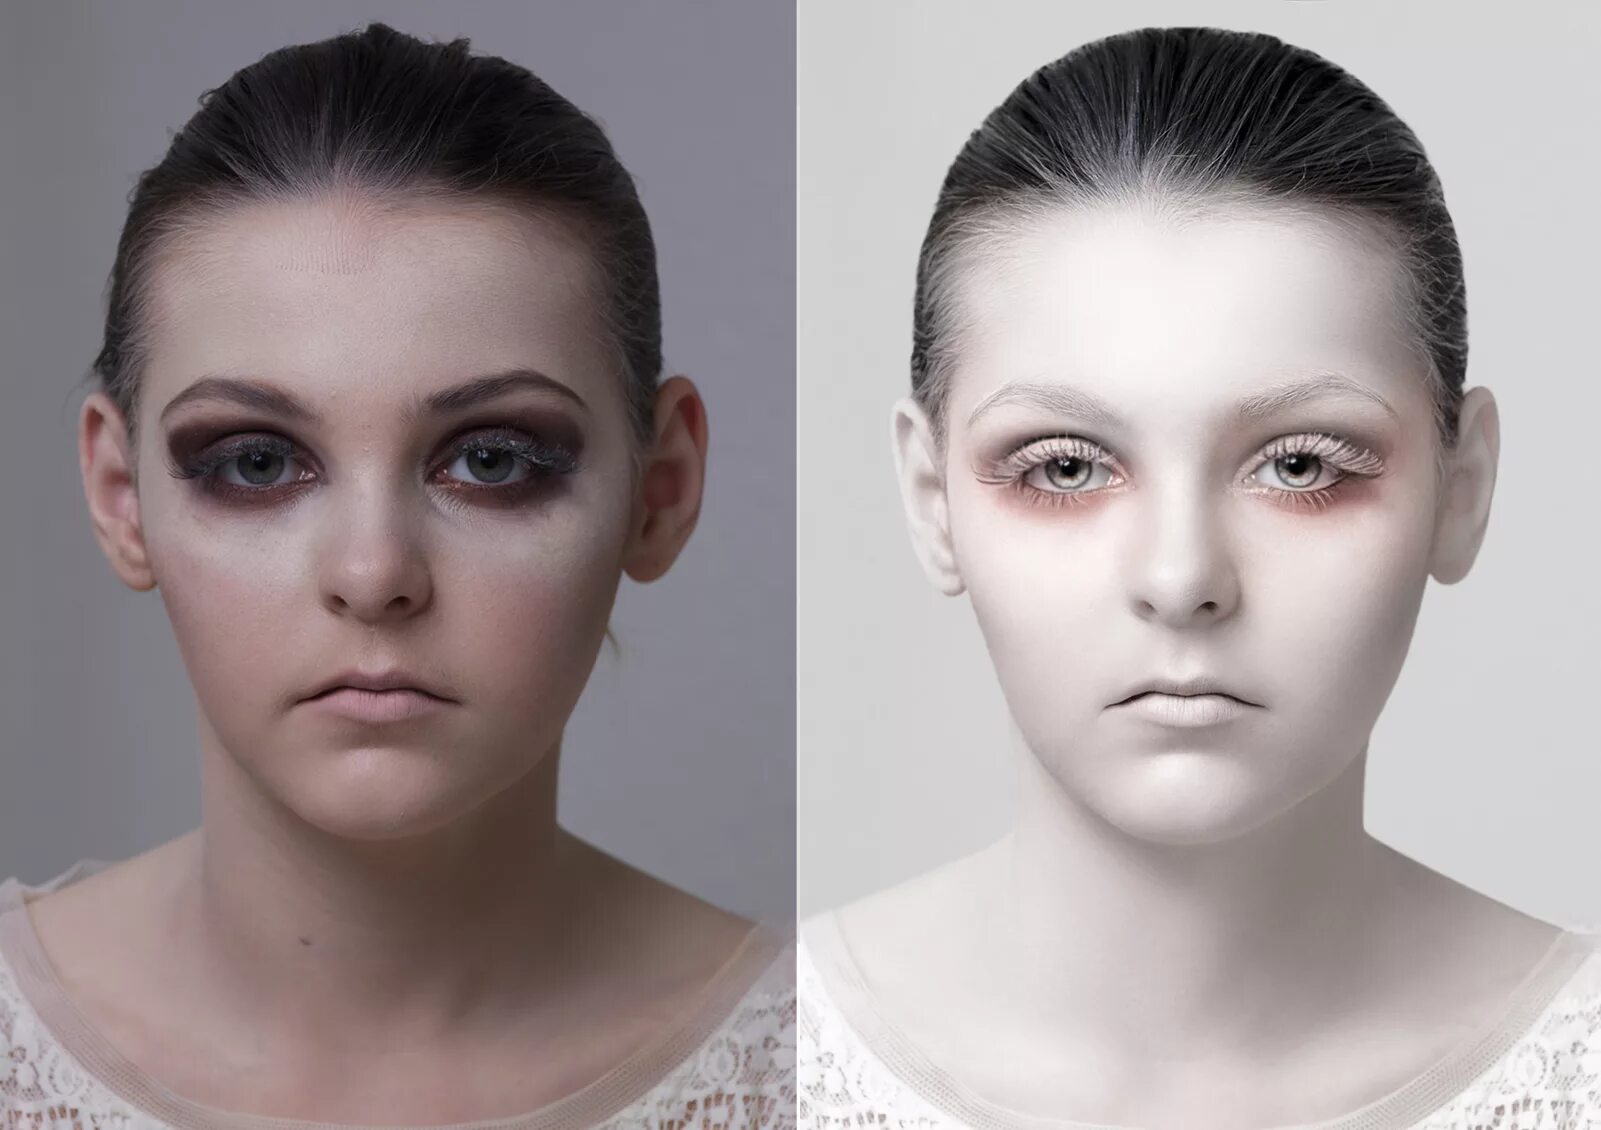 Замажьте какое лицо. Фотограф ретушер. Профессиональная ретуш. Фотографии для обработки оригиналы. Фото до и после фотошопа.